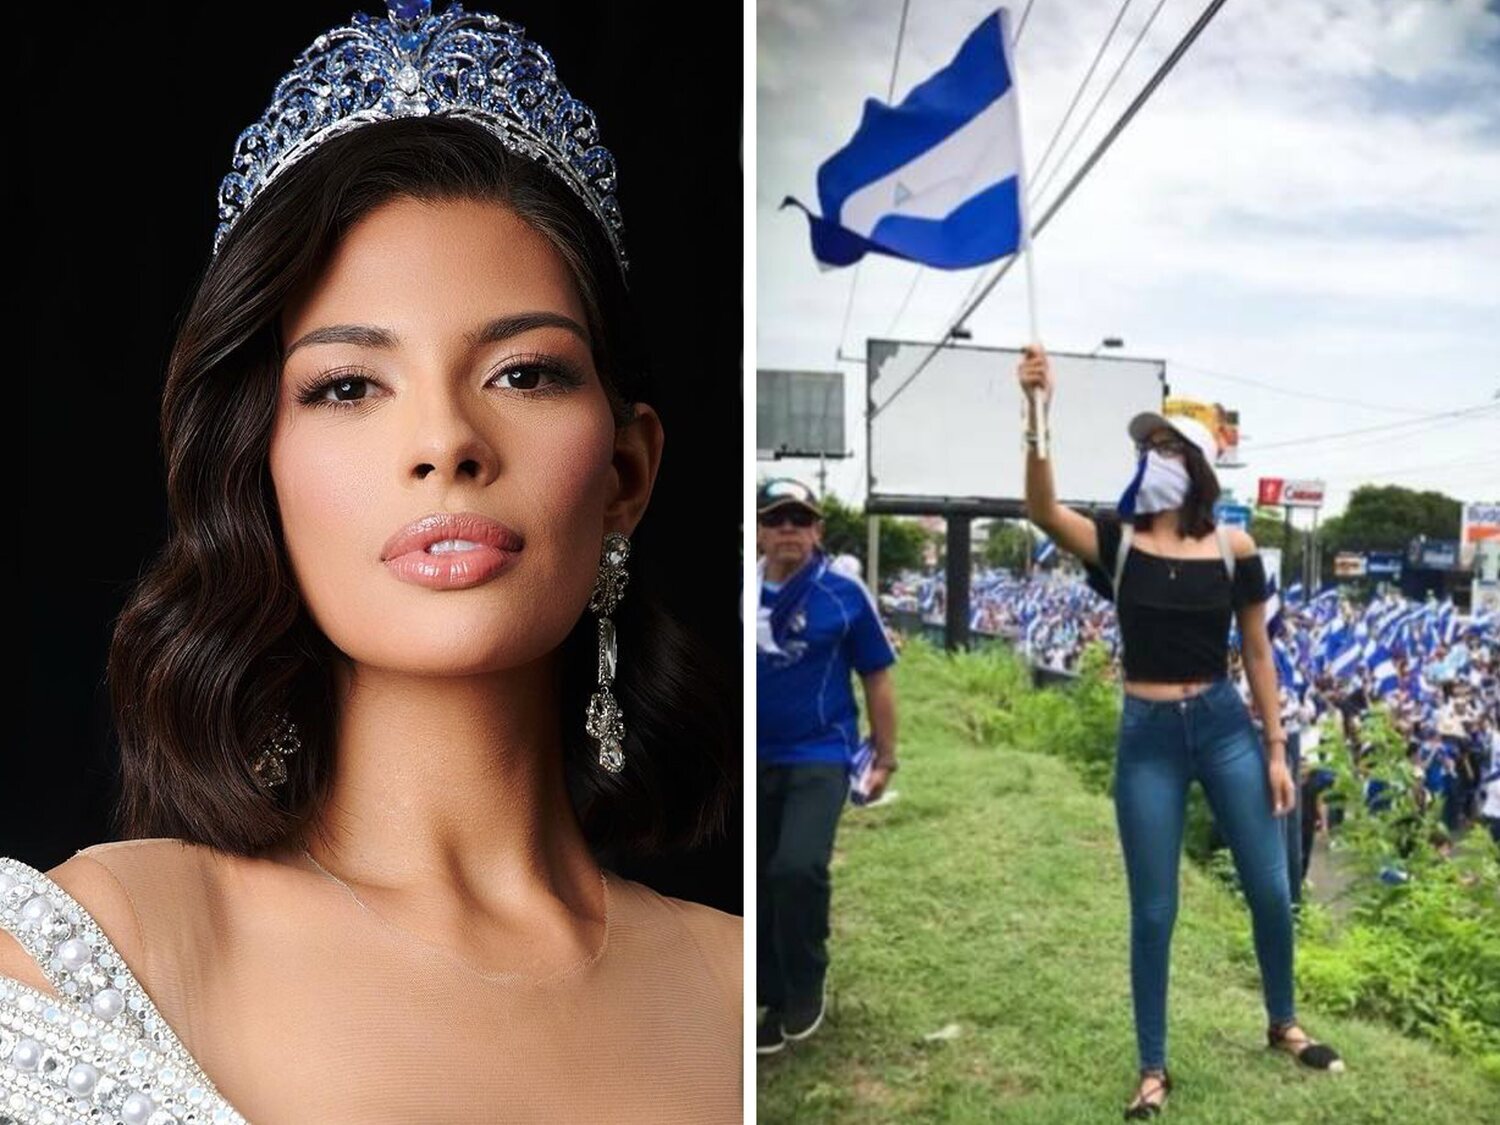 La historia de Sheynnis Palacios, Miss Universo 2023, imagen de la represión del régimen de Ortega y Murillo en Nicaragua